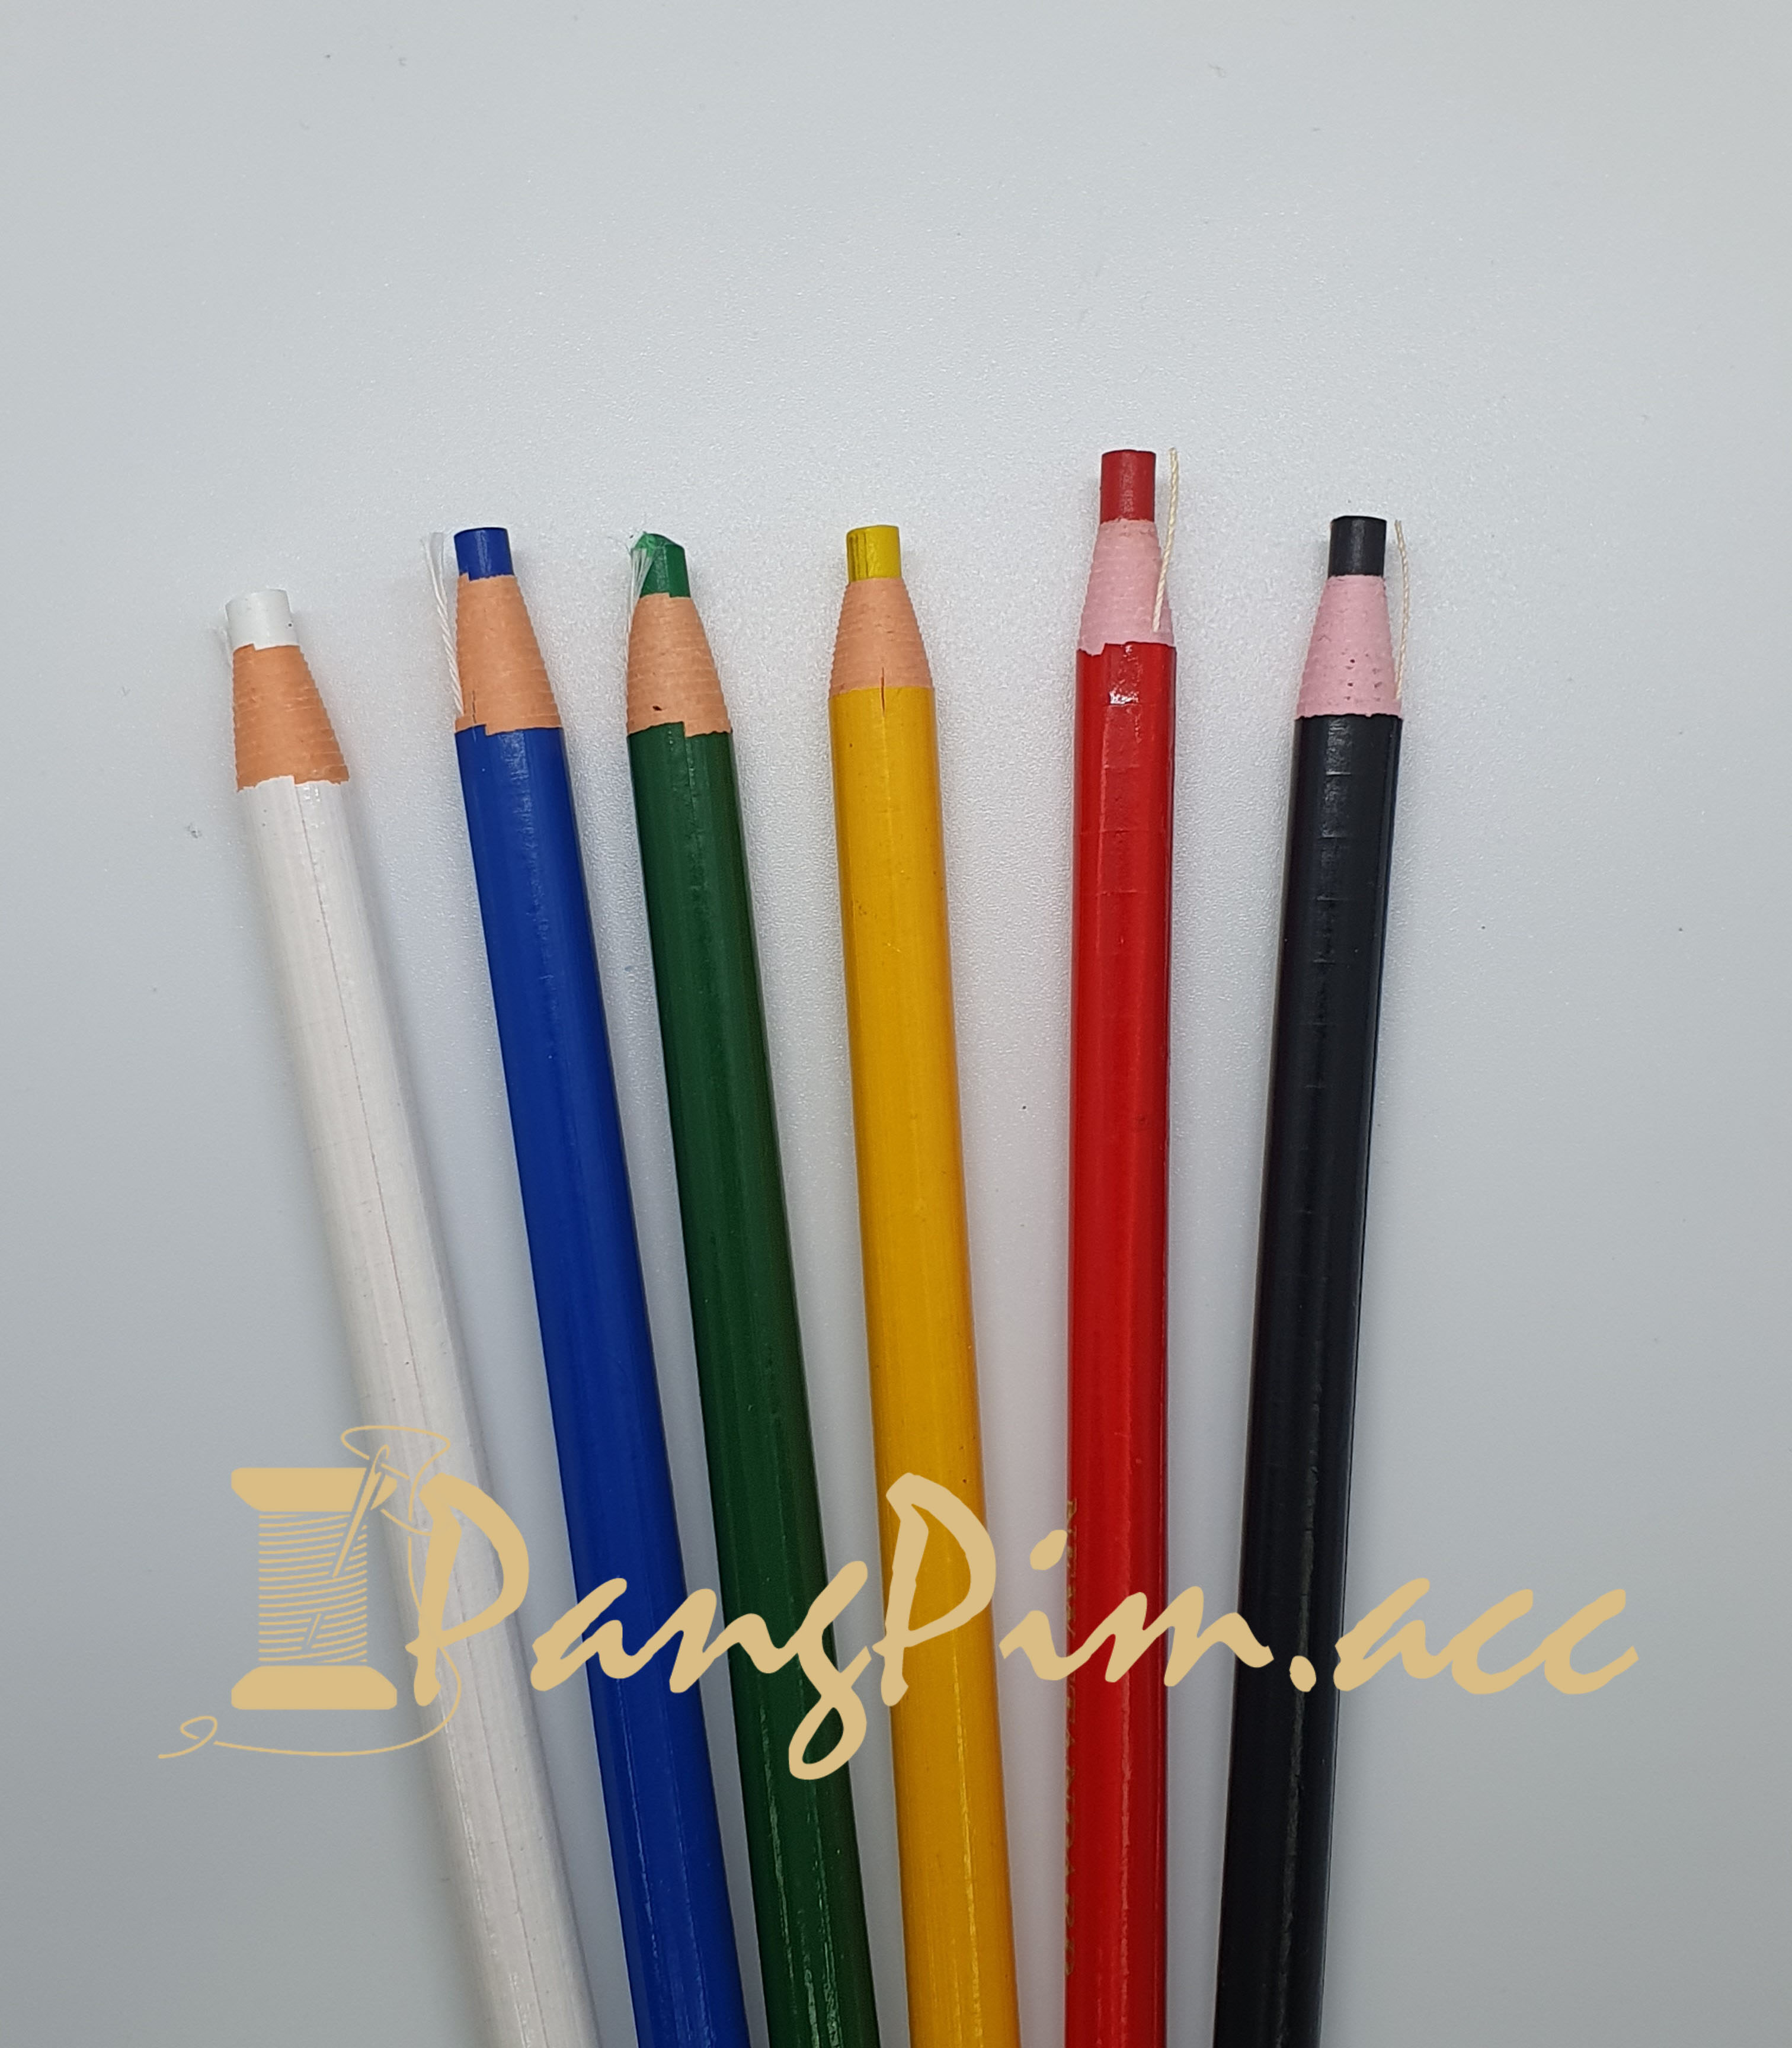 ดินสอขีดผ้า ดินสอปอก ดินสอสี  ดินสอเขียนผ้า ดินสอชอล์กขีดผ้า ดินสอ (สีขาว,สีดำ,สีเขียว,สีเหลือง,สีแดง,สีน้ำเงิน)